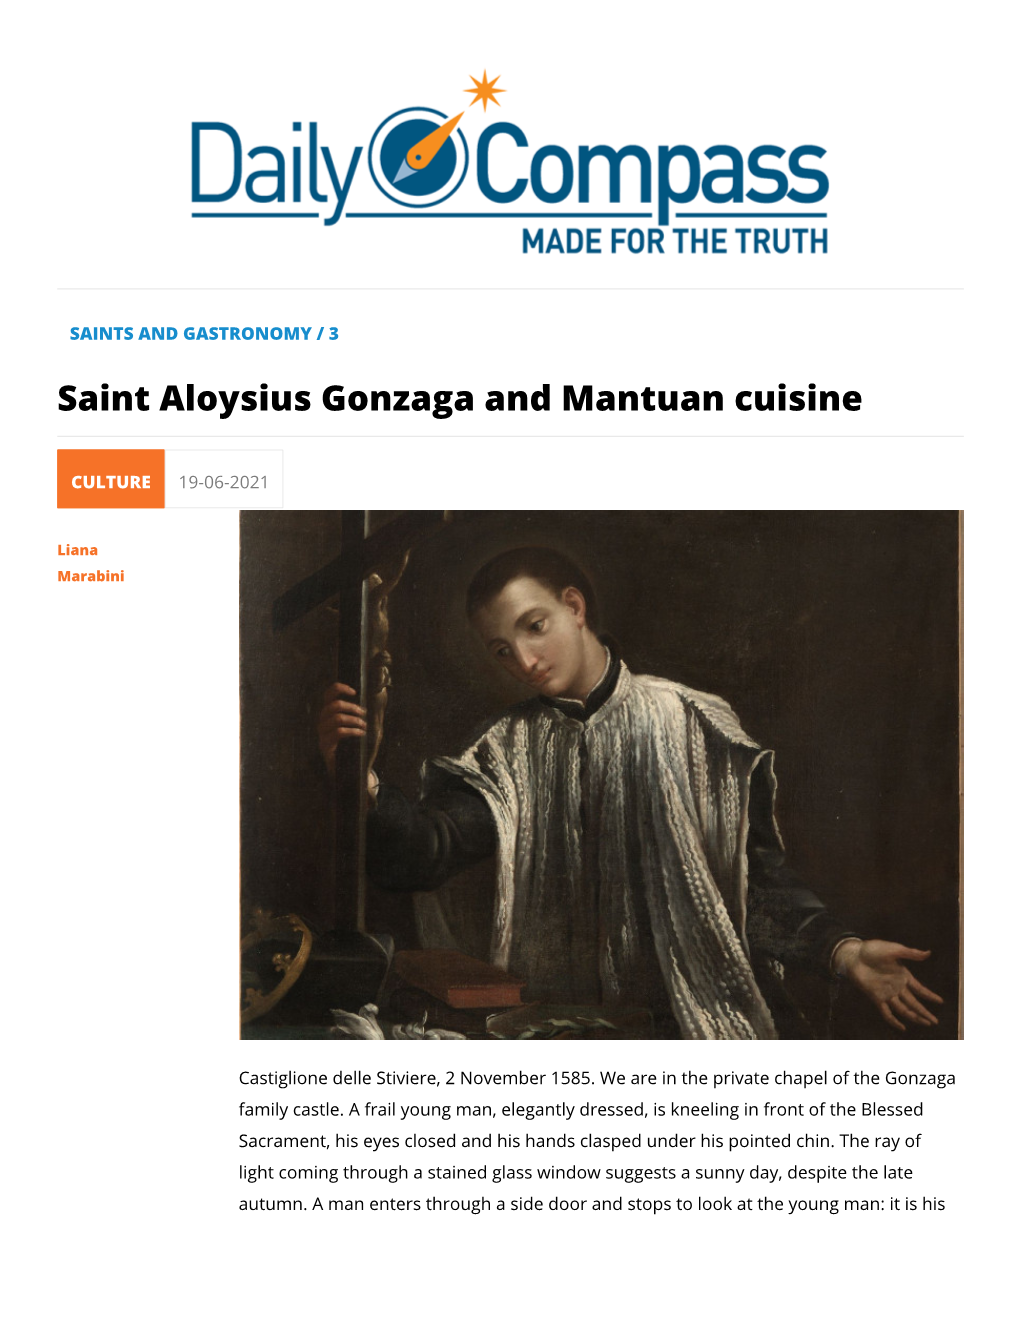 Saint Aloysius Gonzaga and Mantuan Cuisine